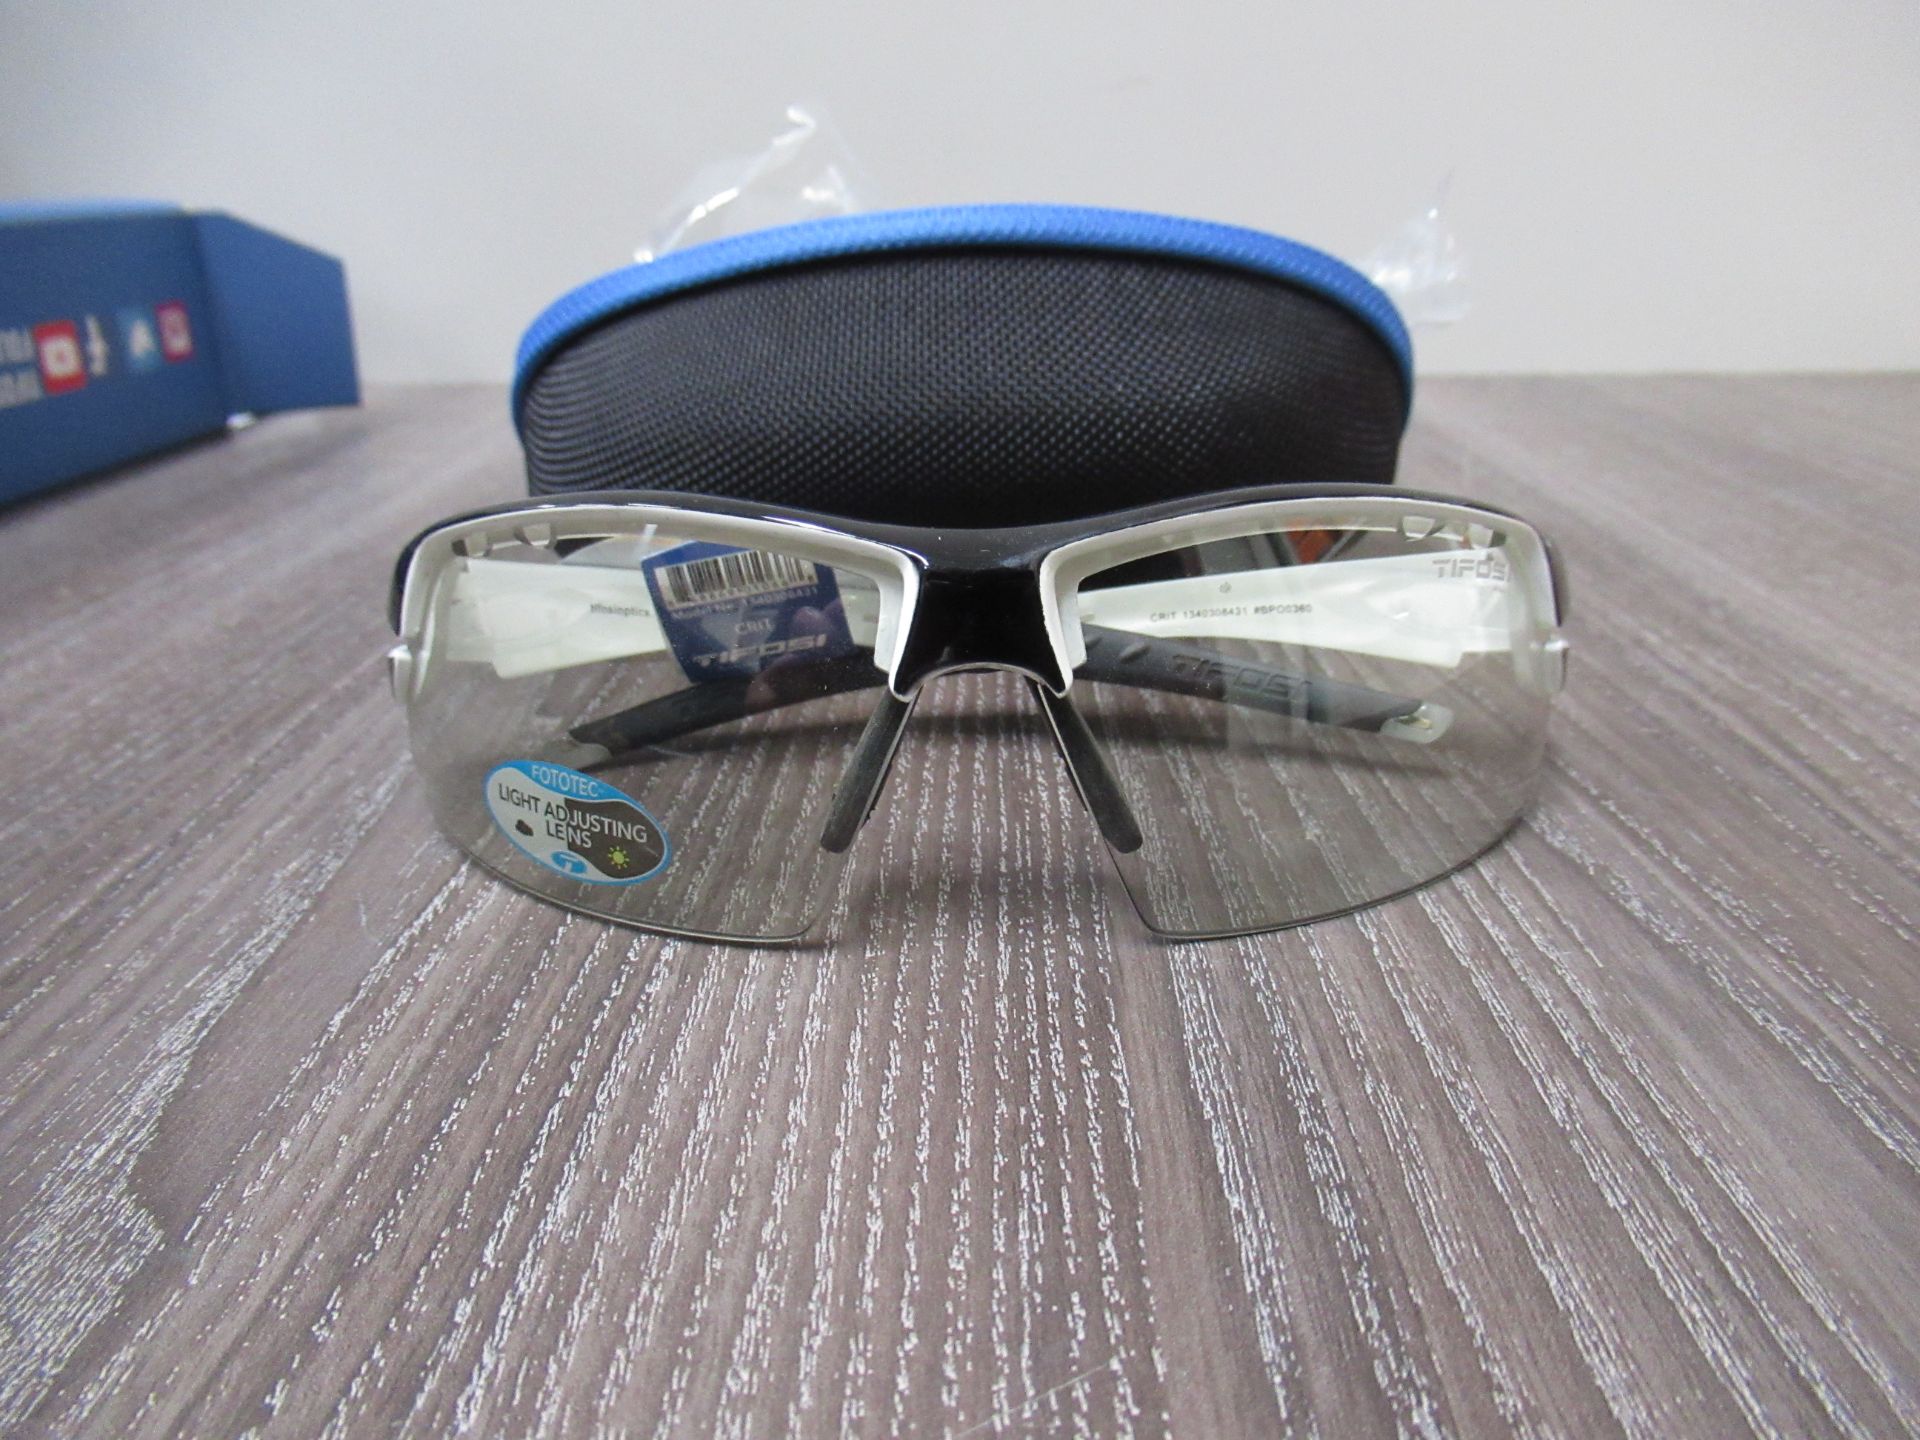 Tifosi Crit Crystal Black Sunglasses (RRP£79.99)